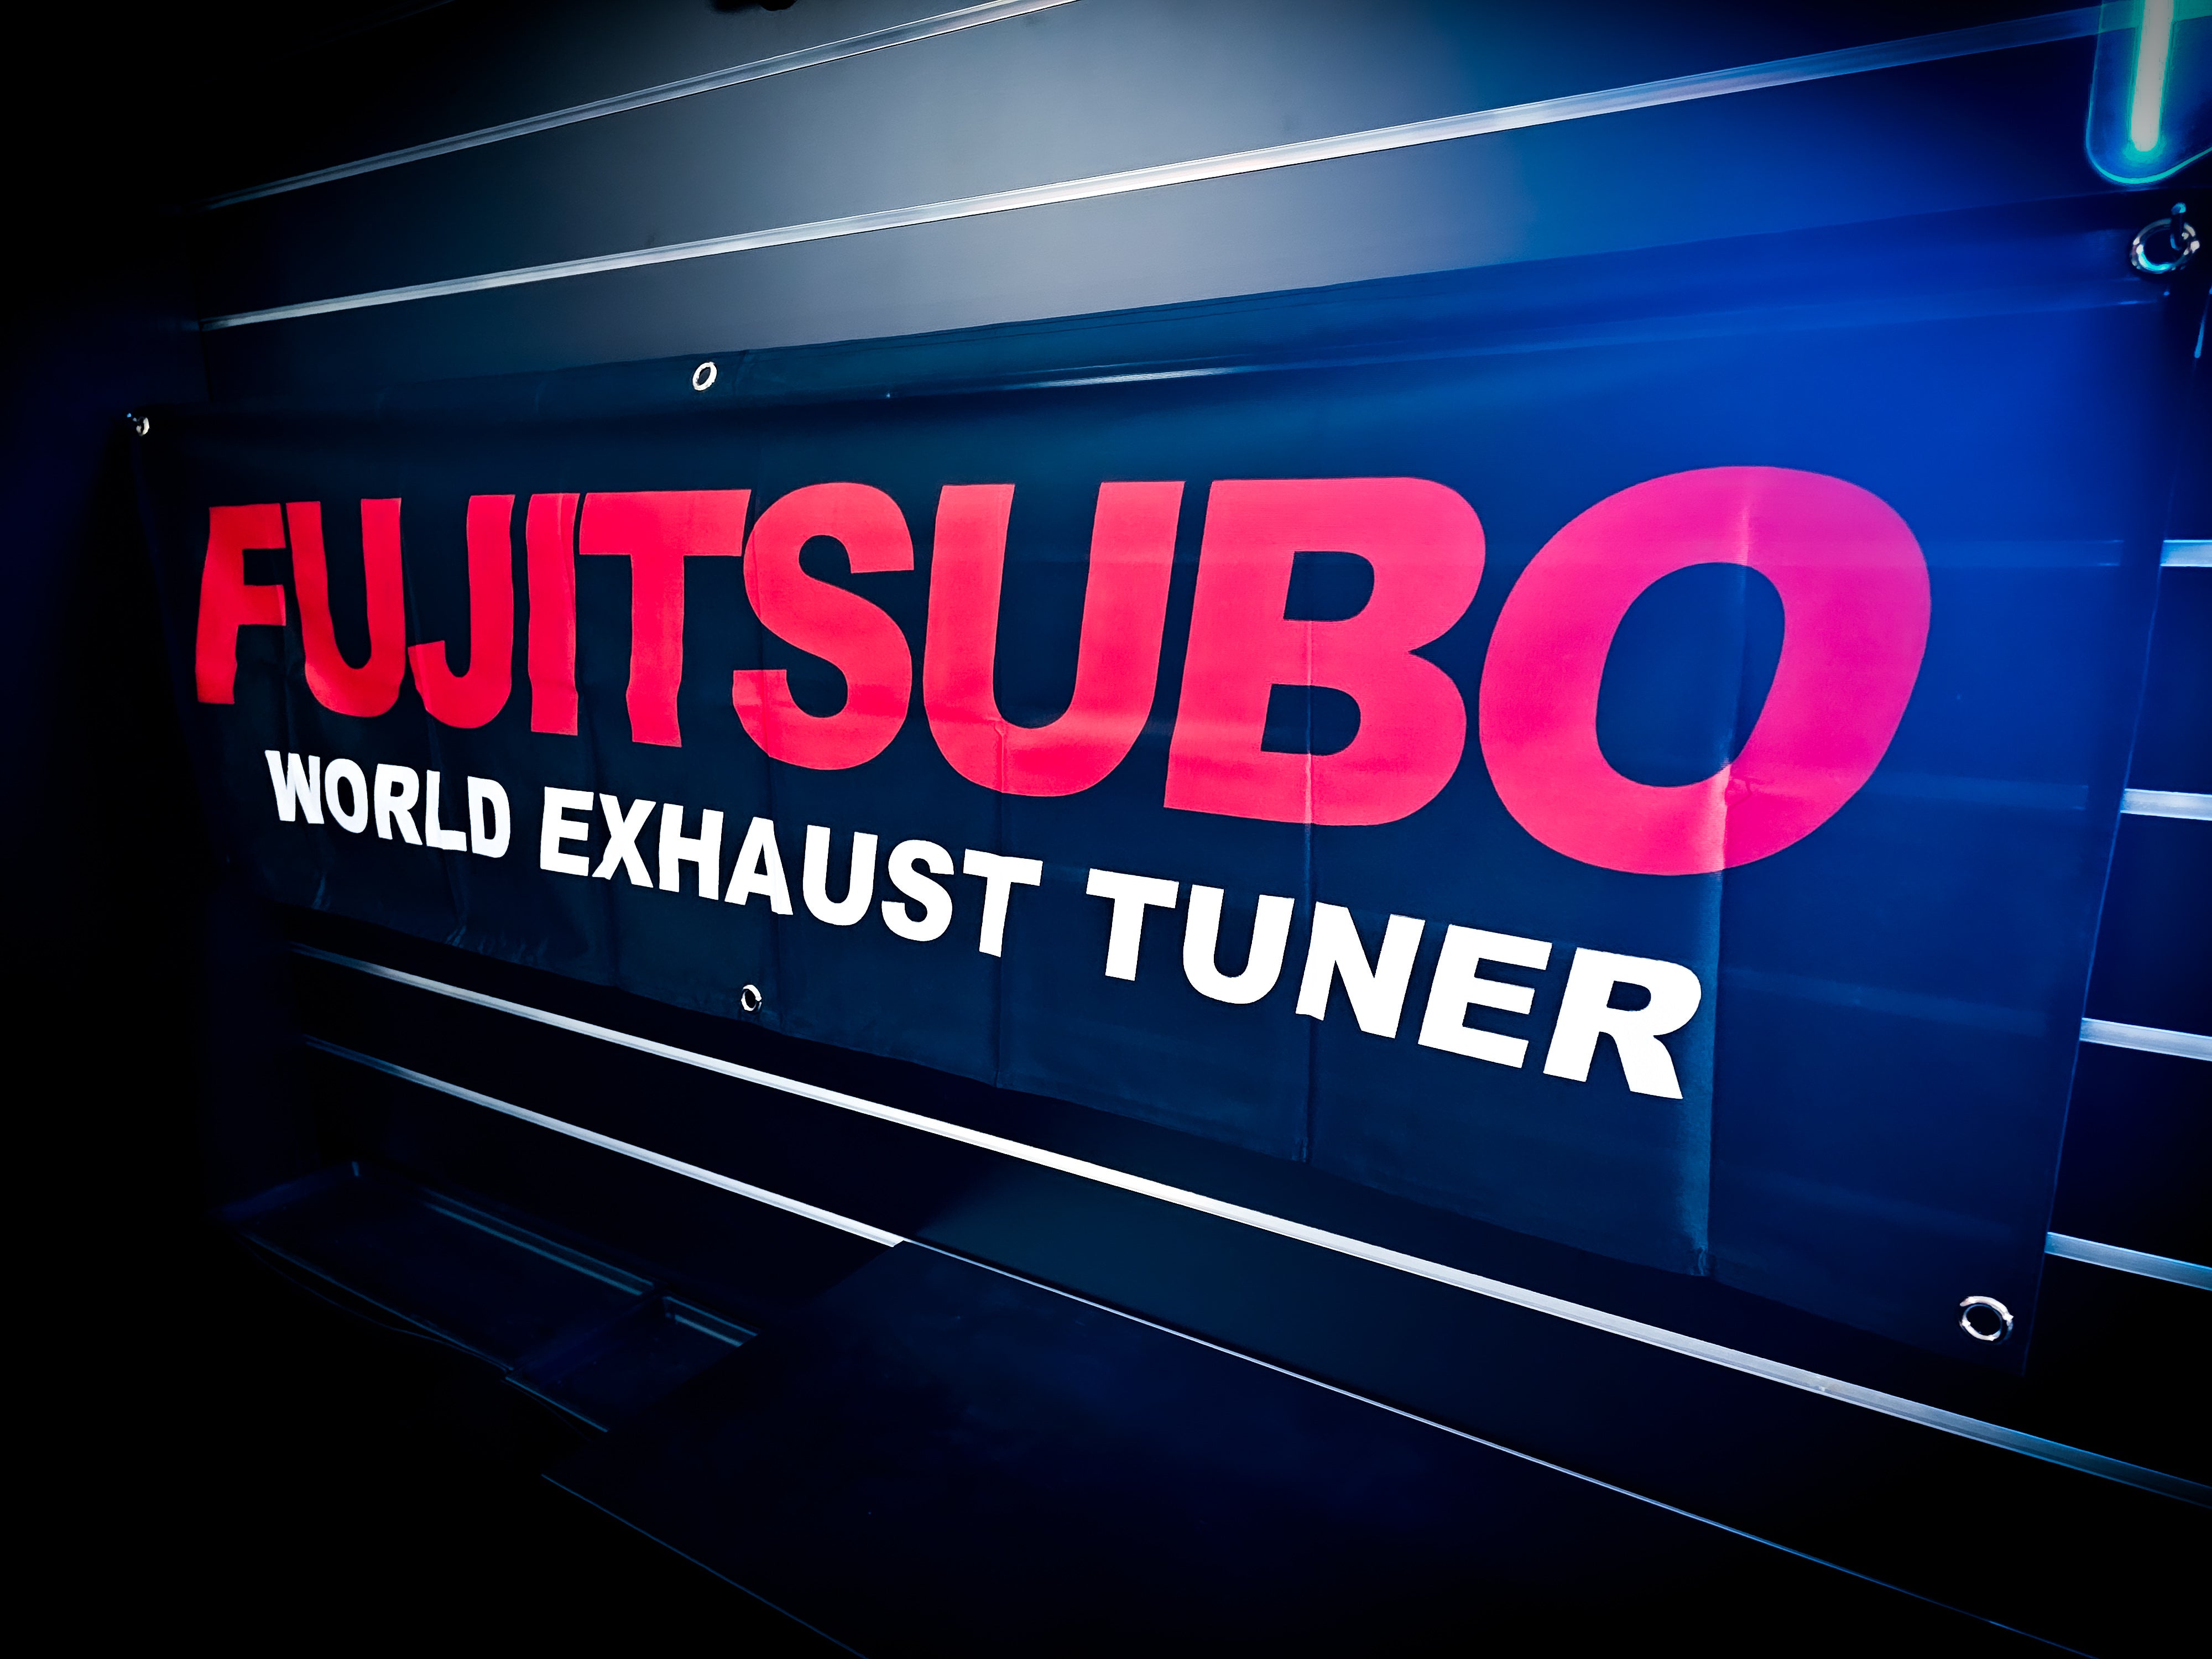 FUJITSUBO Exhaust Tuner Slim Workshop Banner Flag